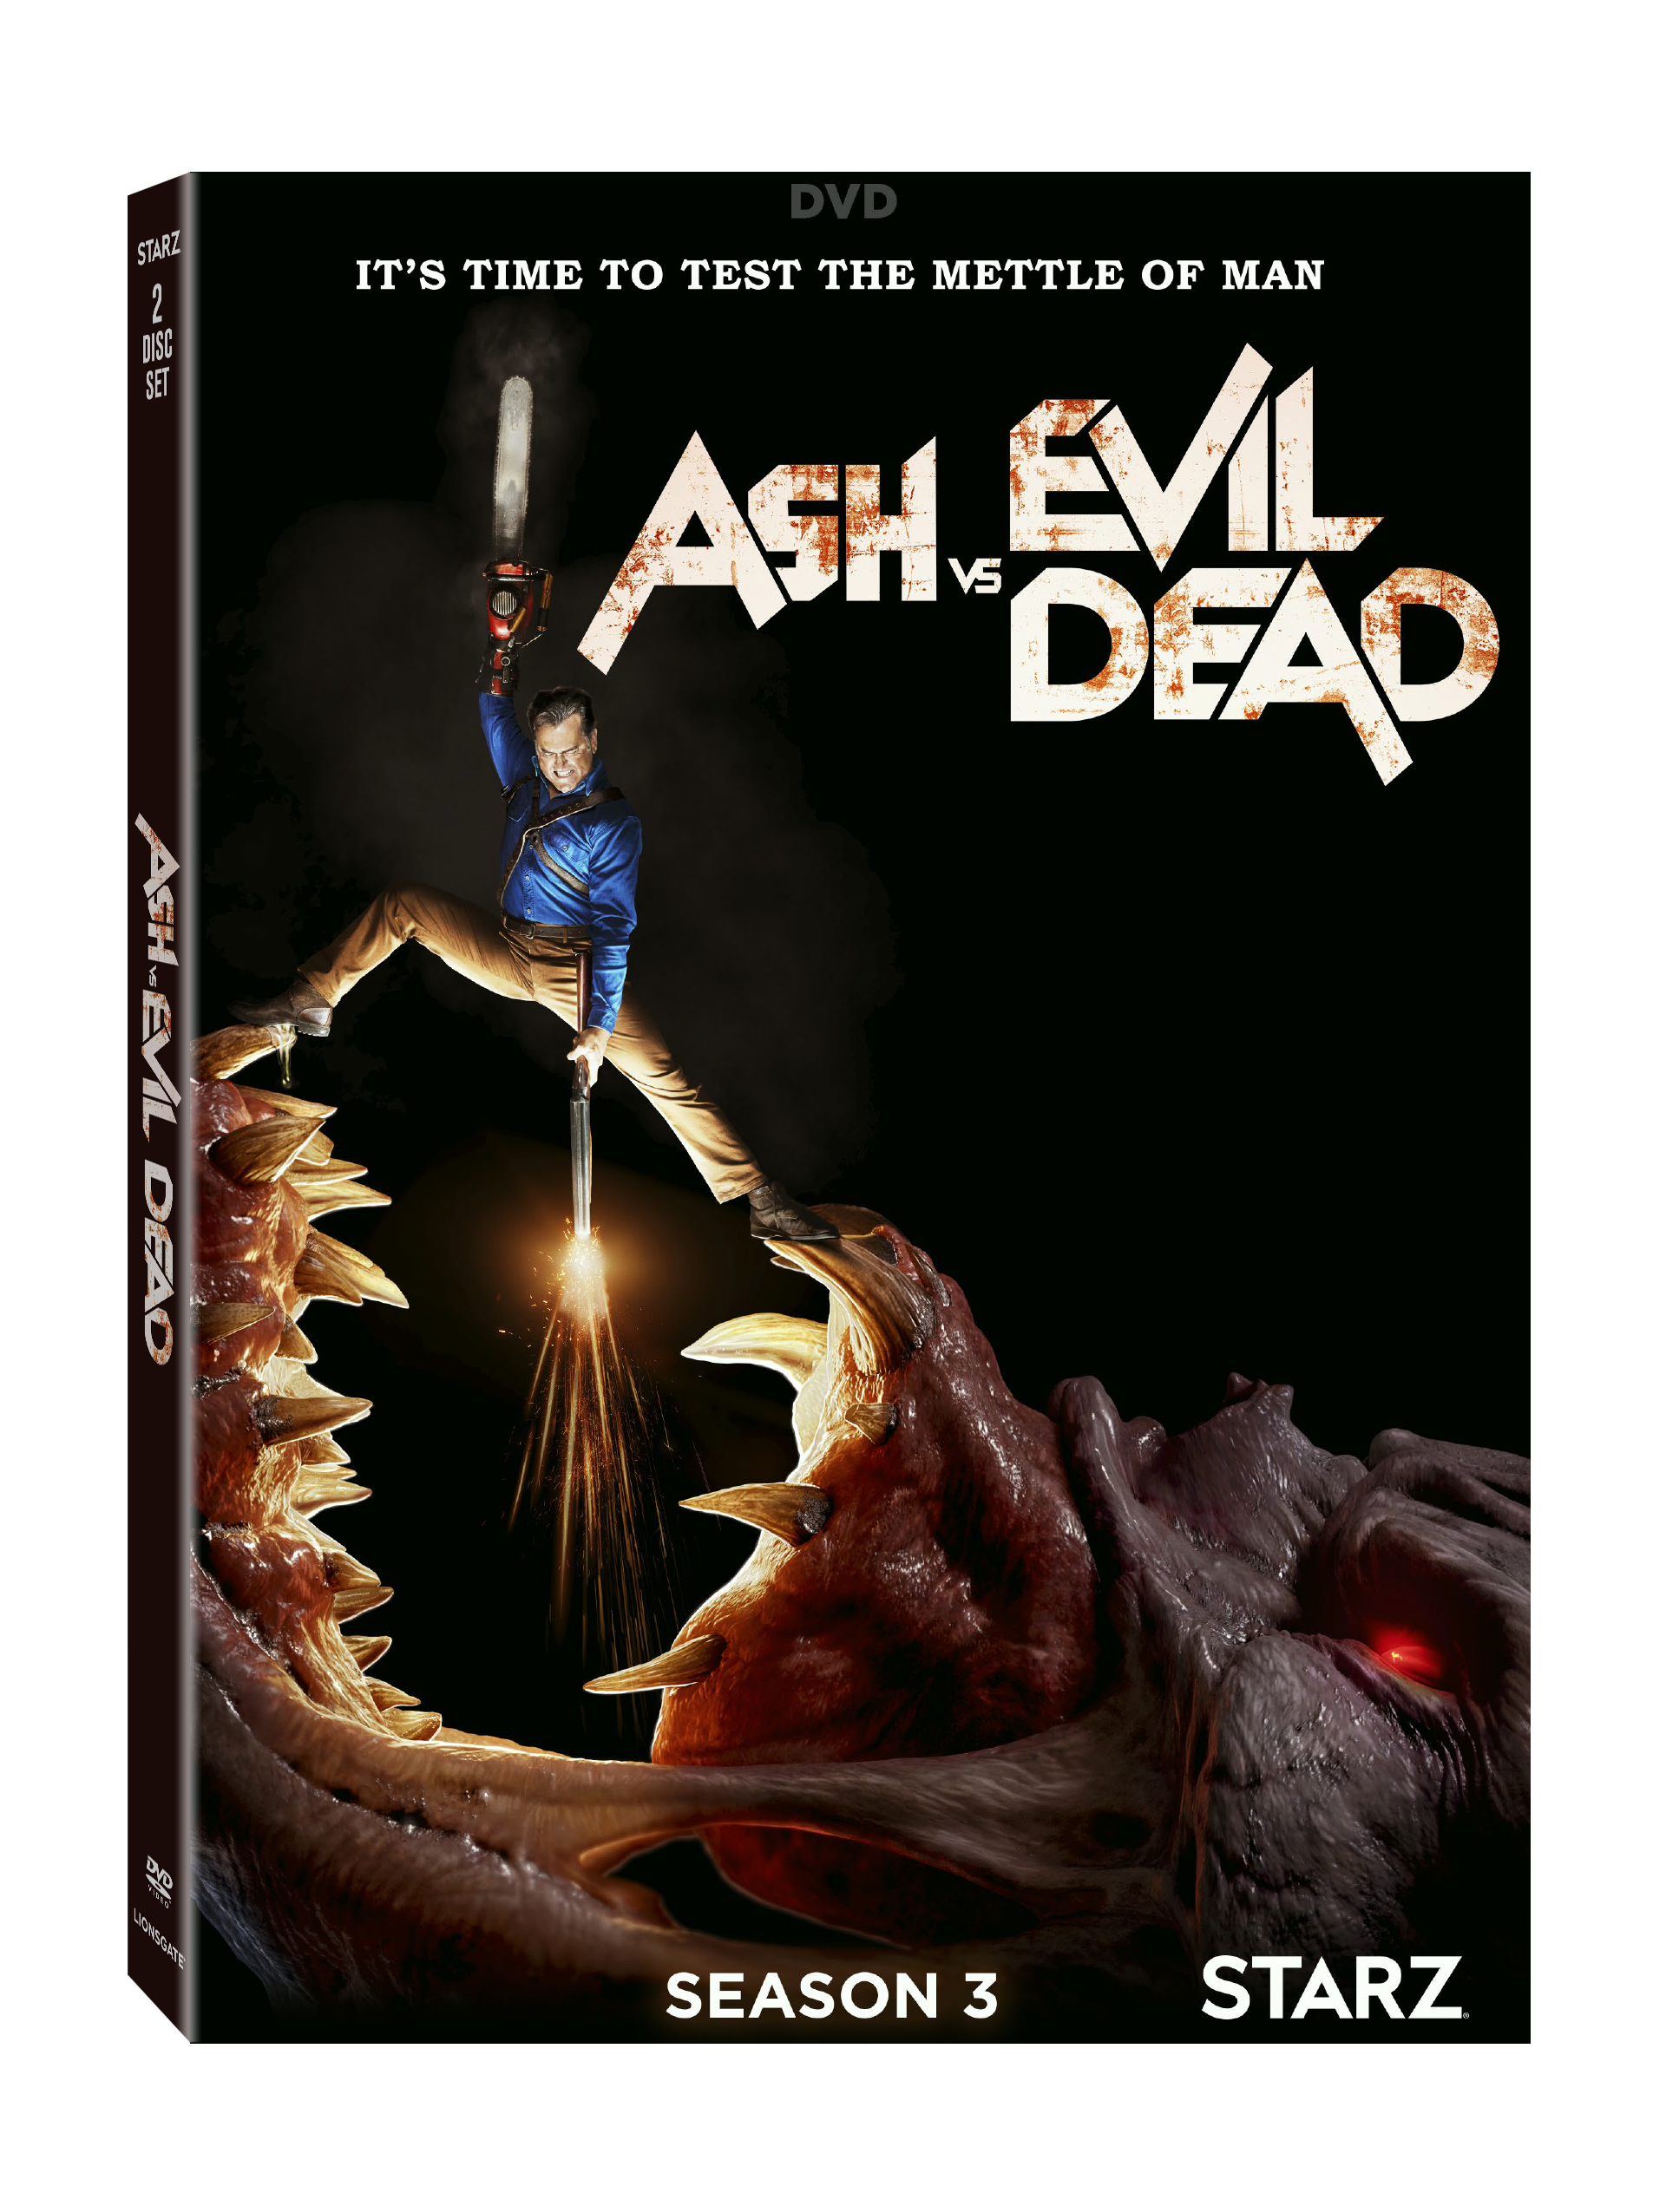 Ash vs. Evil Dead: Season 3 DVD Cover (Lionsgate Home Entertainment)